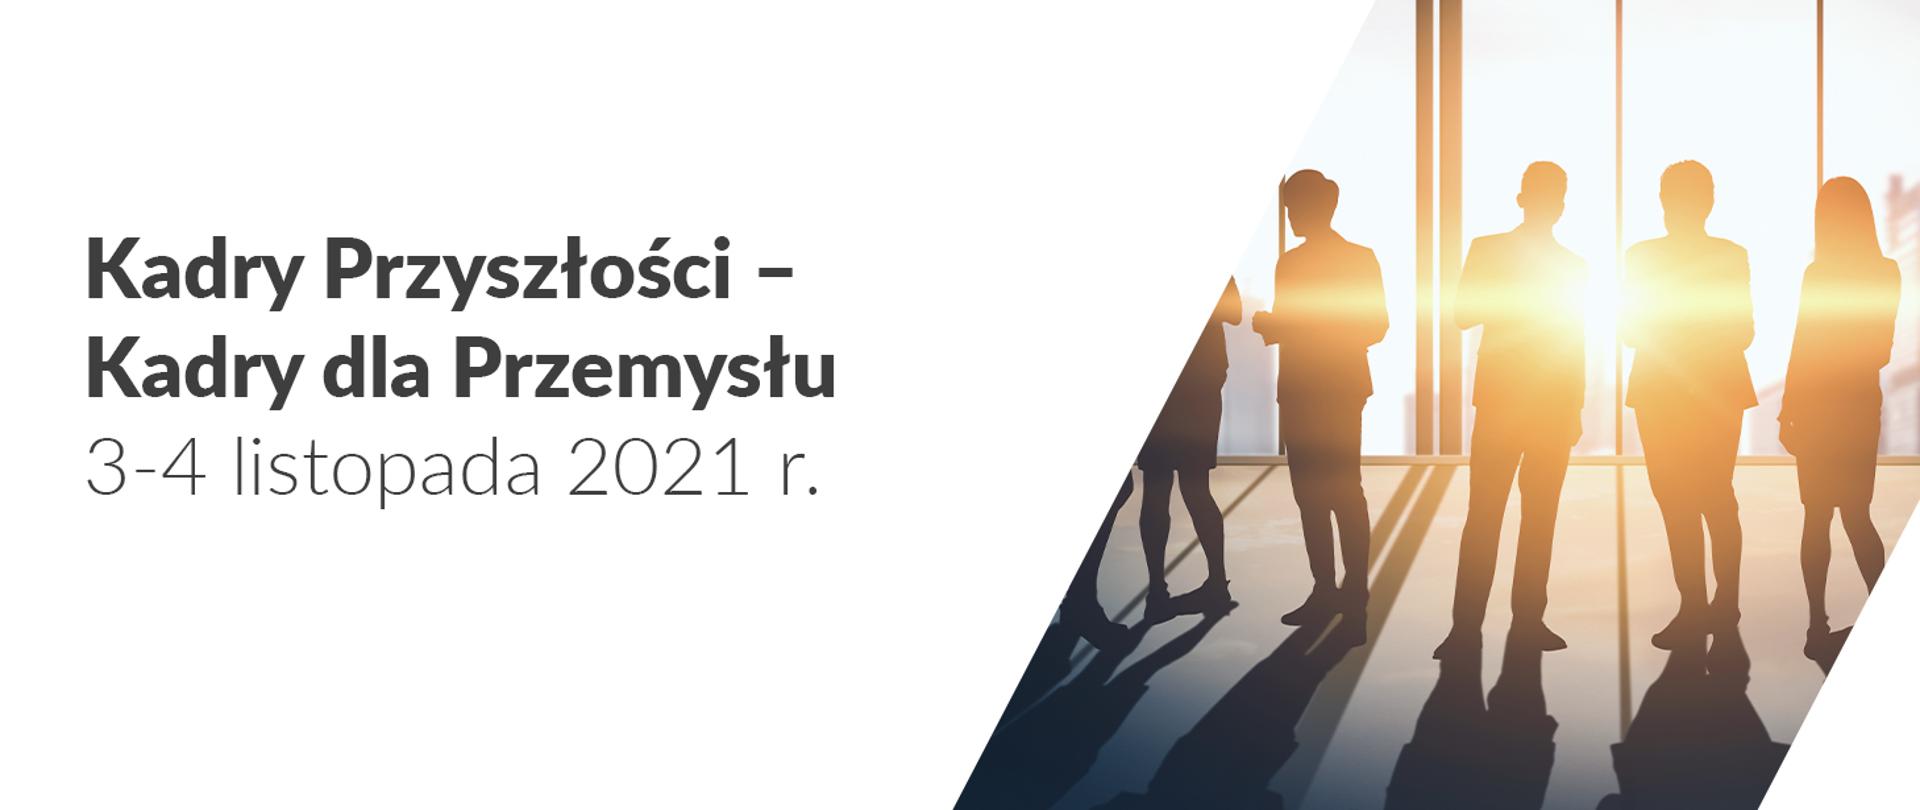 Zaproszenie na na konferencji „Kadry przyszłości – kadry dla przemysłu” w której udział weźmie wiceminister Olga Semeniuk. Na zdjęciu napis Kady Przyszłości - kadry dla Przemysłu 3 listopada 2021 r. Dodatkowo zdjęcie z rozmawiającymi ludźmi. 